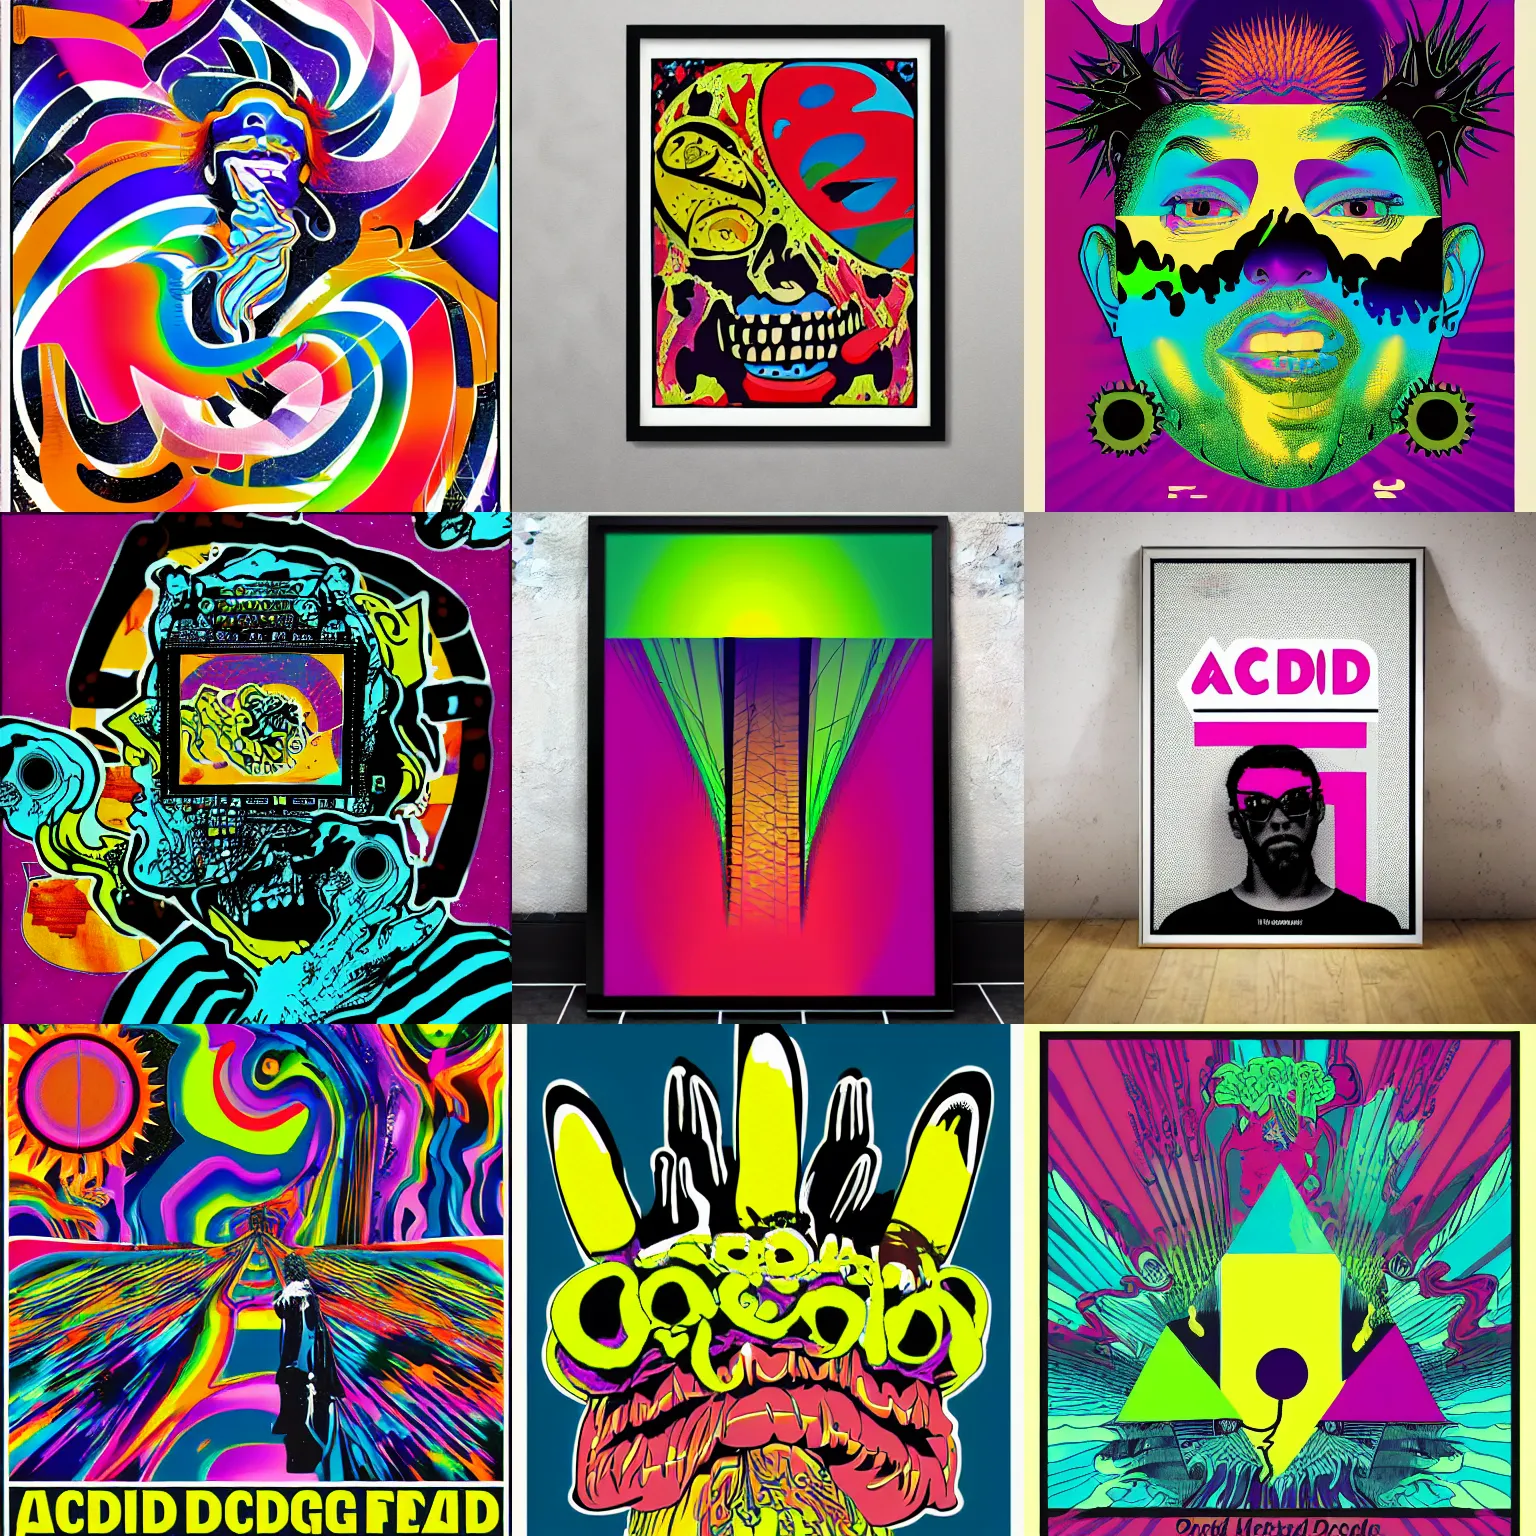 Prompt: acid graphic design poster, album art